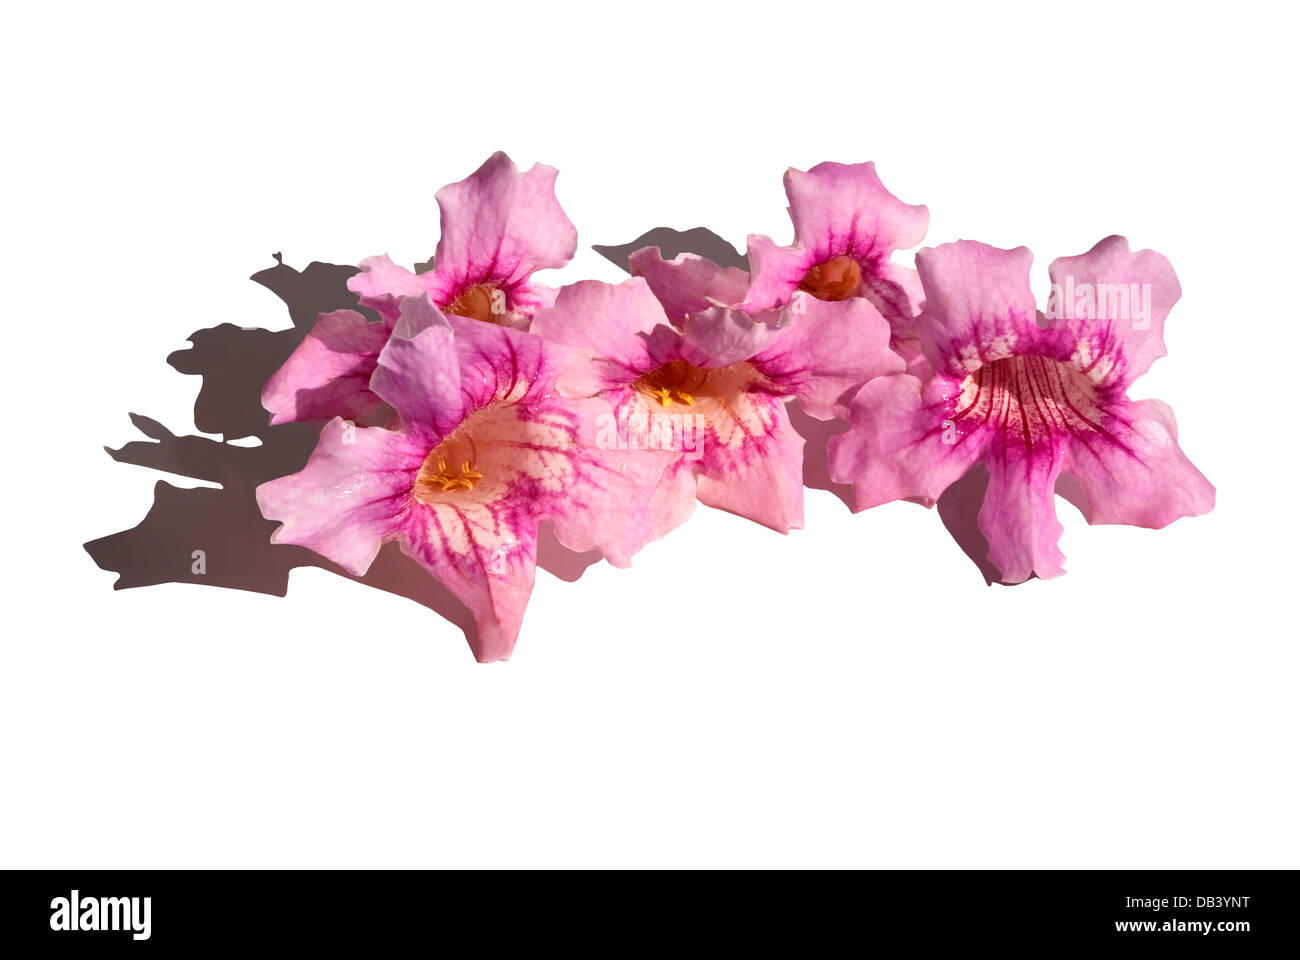 Flores de color rosa, con forma de campana. Podranea ricasoliana Foto de stock